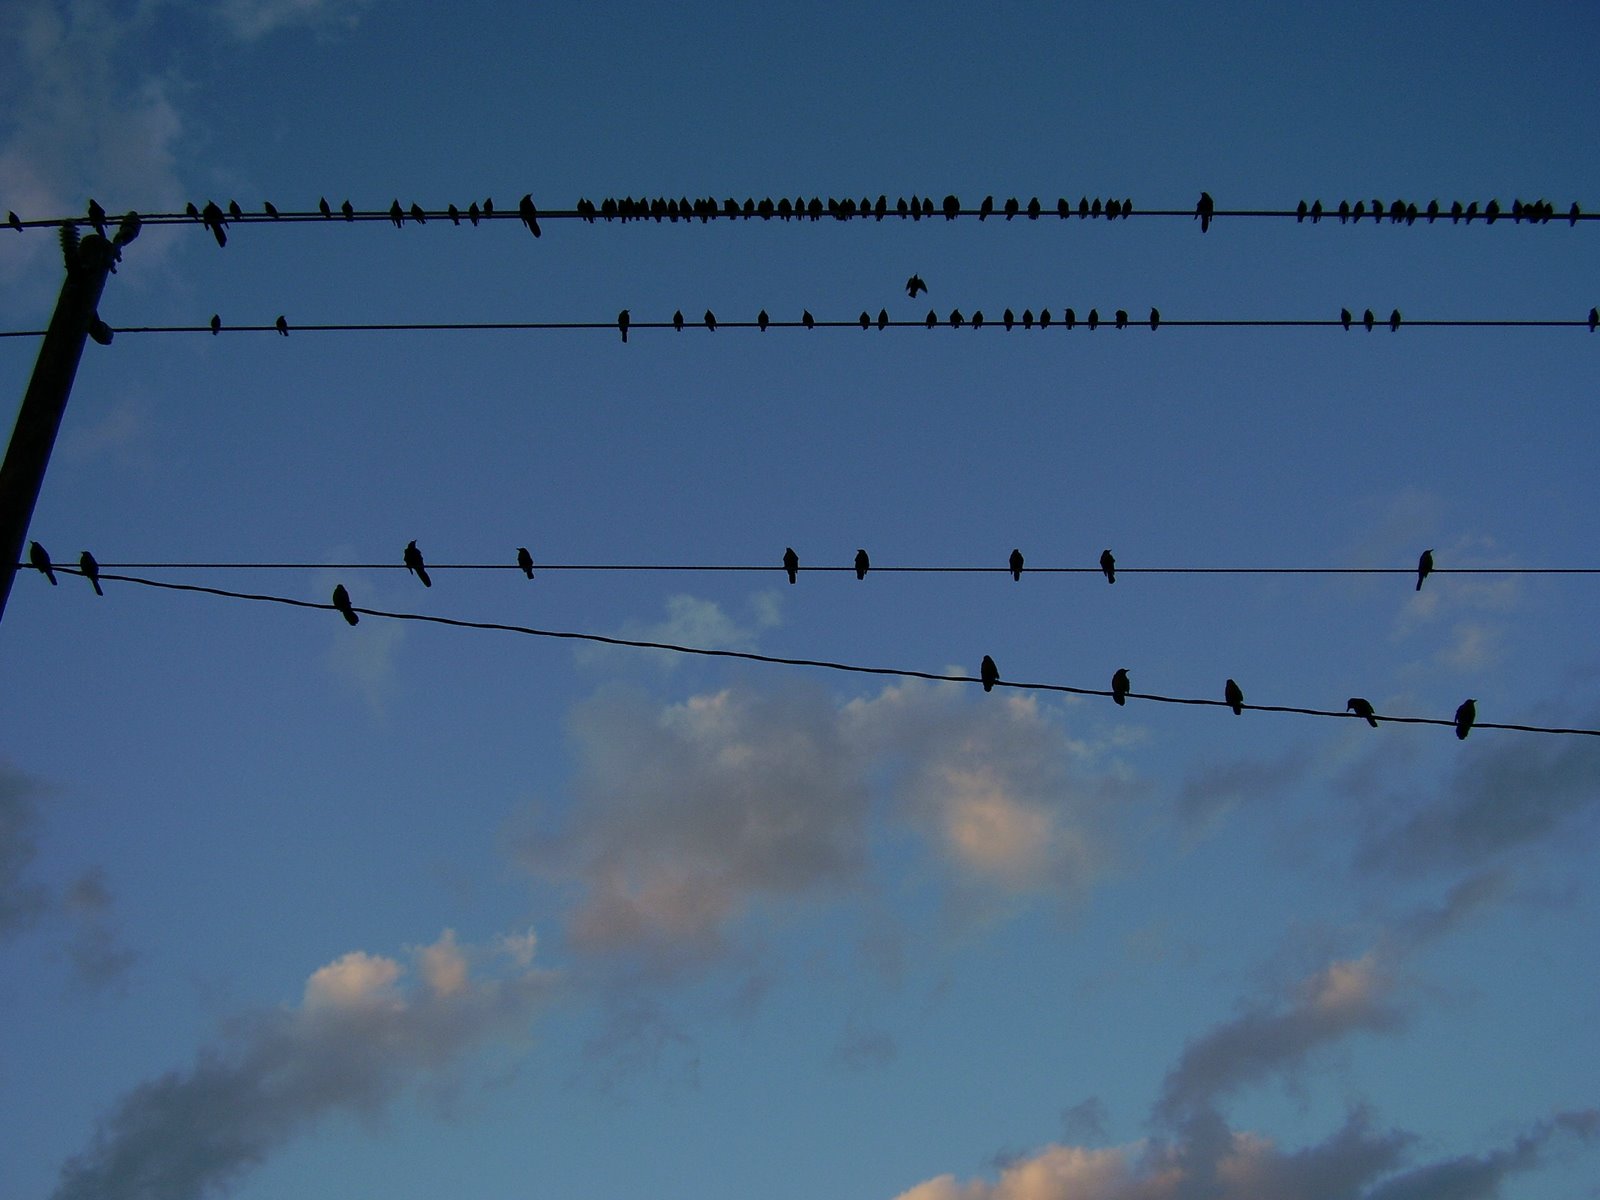 [Birds+on+Wires+2.jpg]